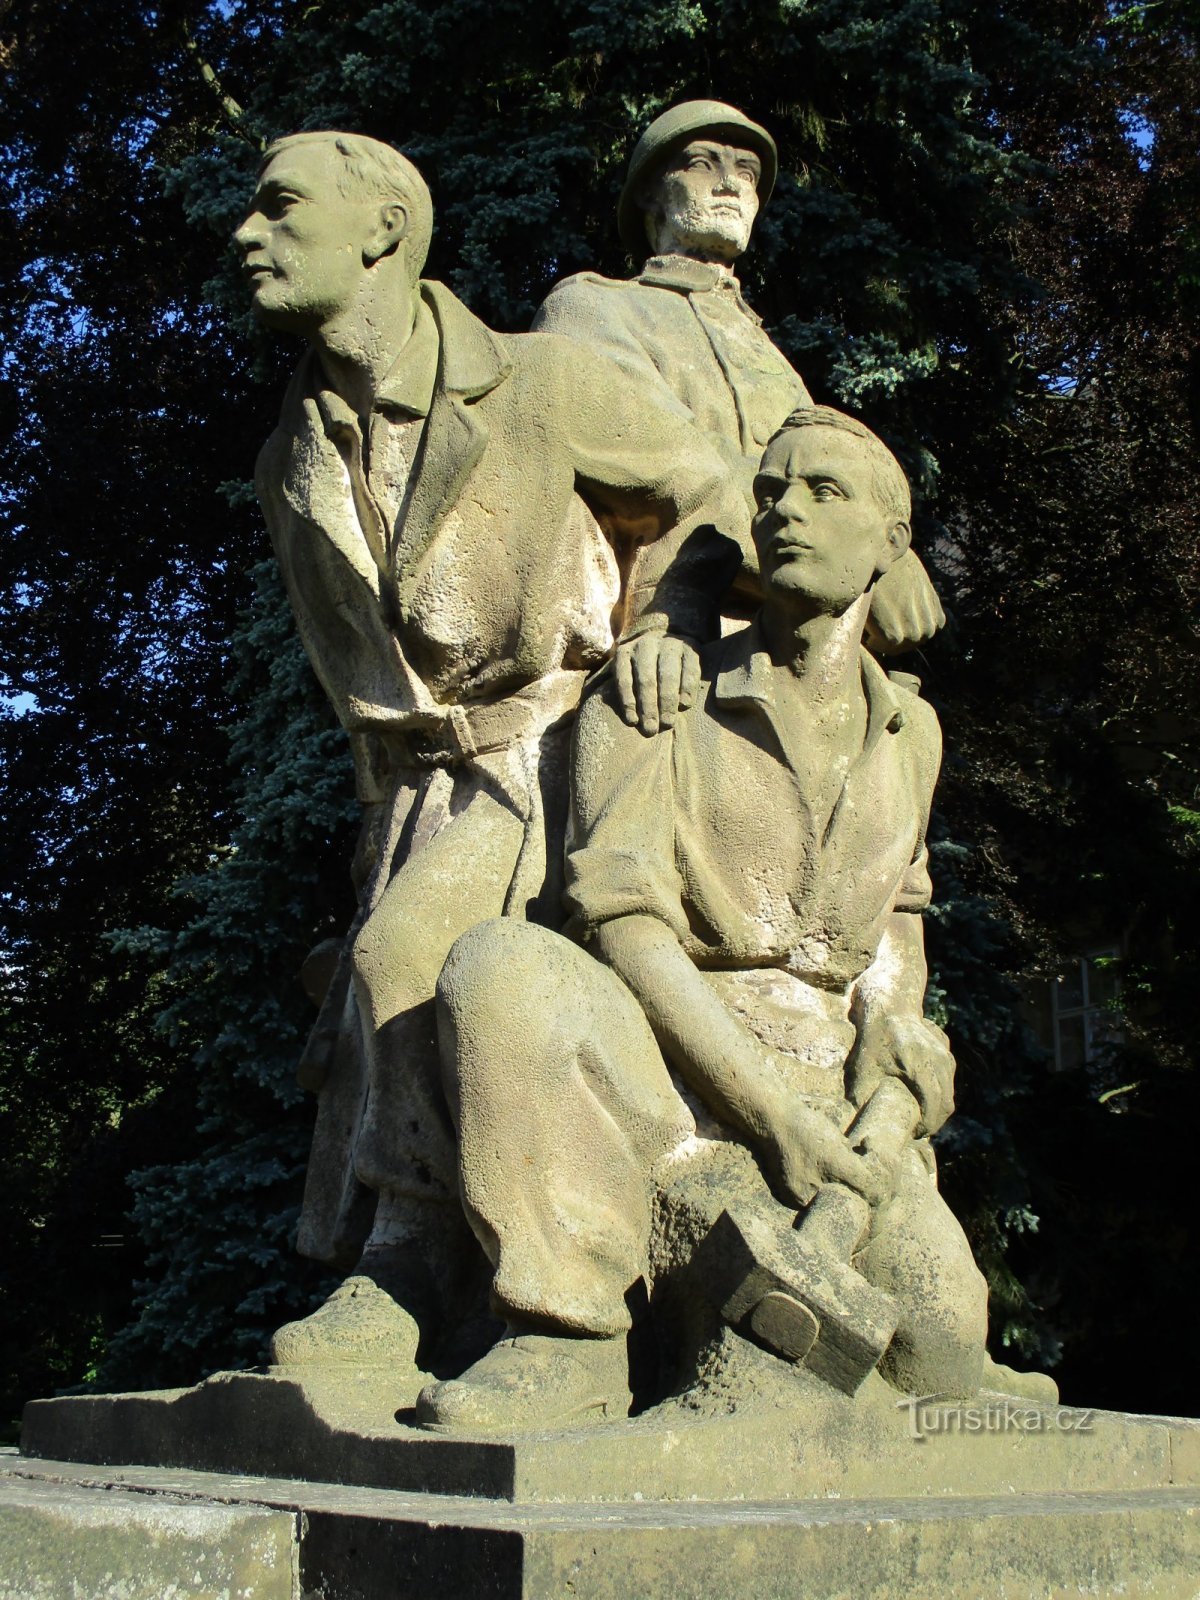 Đài tưởng niệm cuộc kháng chiến và nạn nhân của Thế chiến thứ hai (Smiřice, ngày 2 tháng 2.6.2019 năm XNUMX)